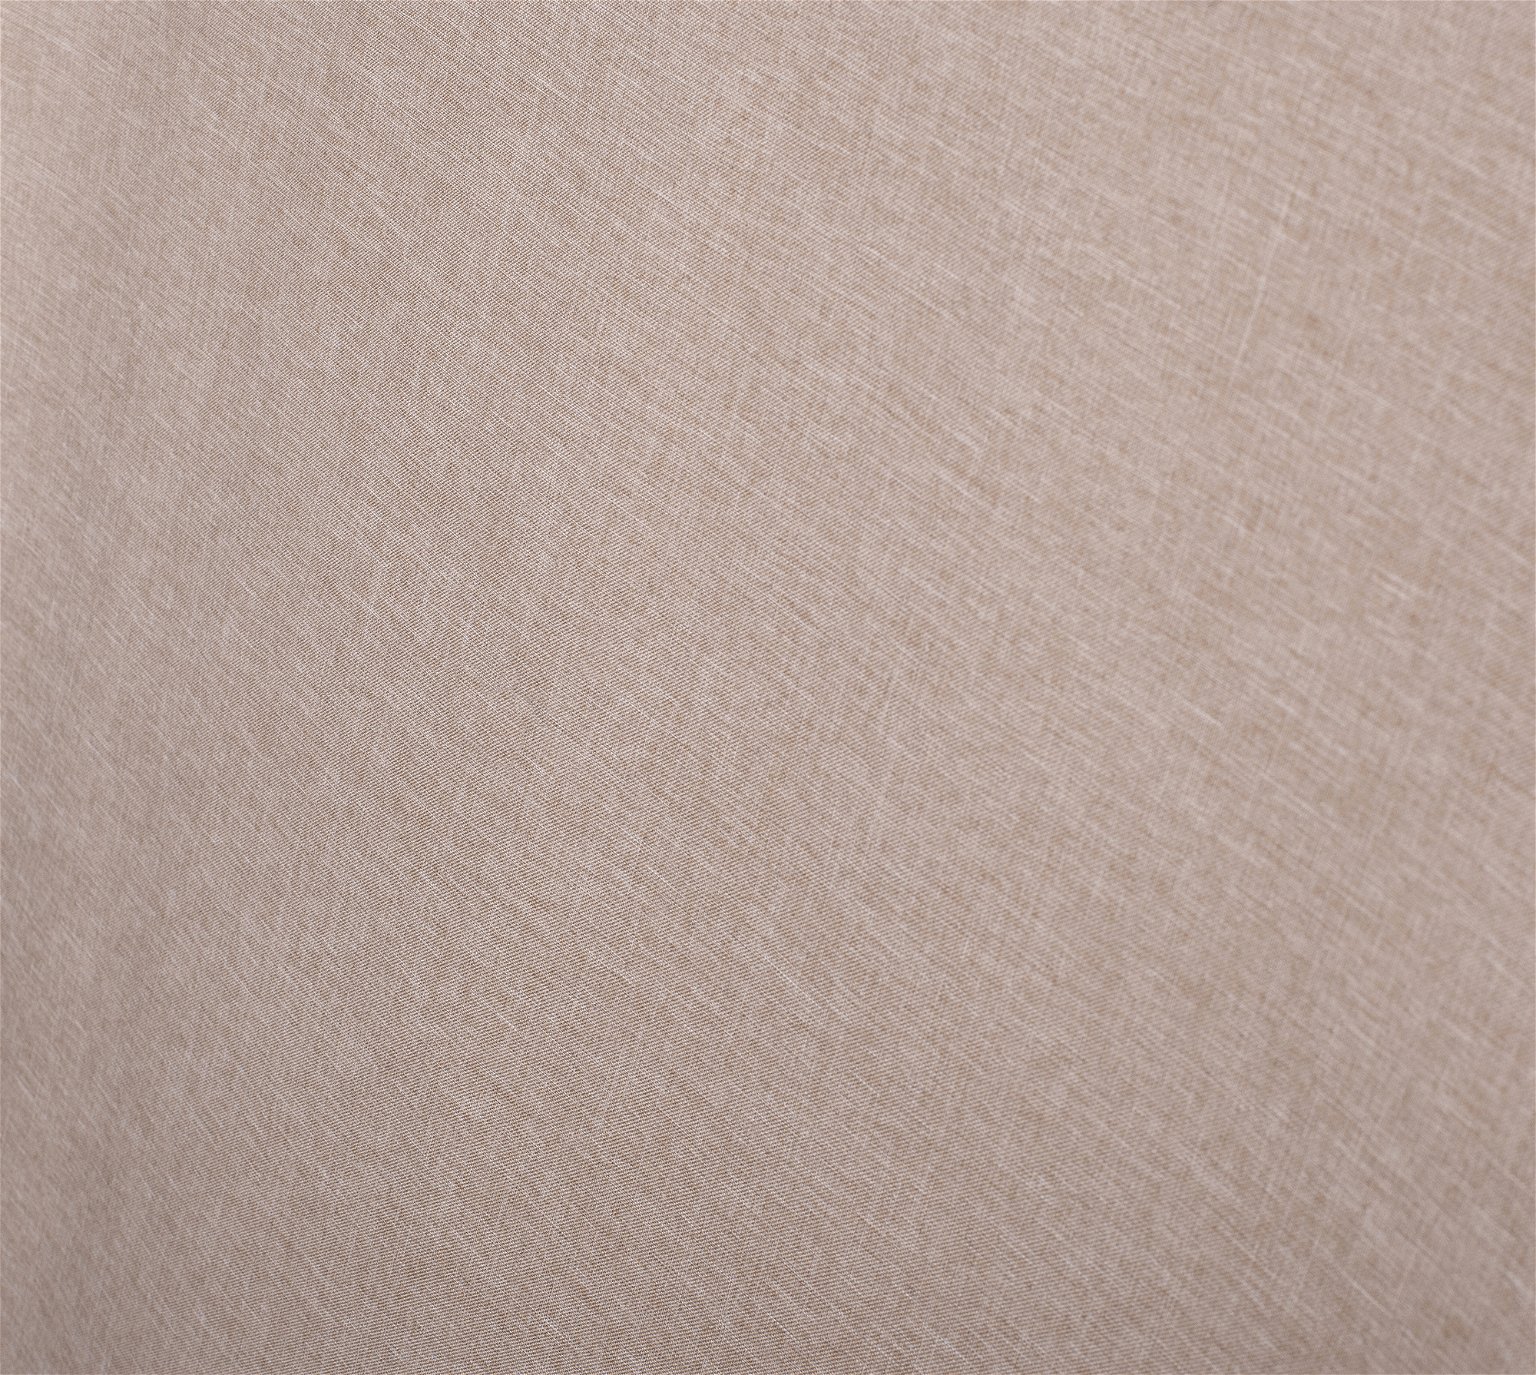 Klasikinė ritininė užuolaida MILAN, rudos sp., 90 x 230 cm, 100 % poliesteris - 2